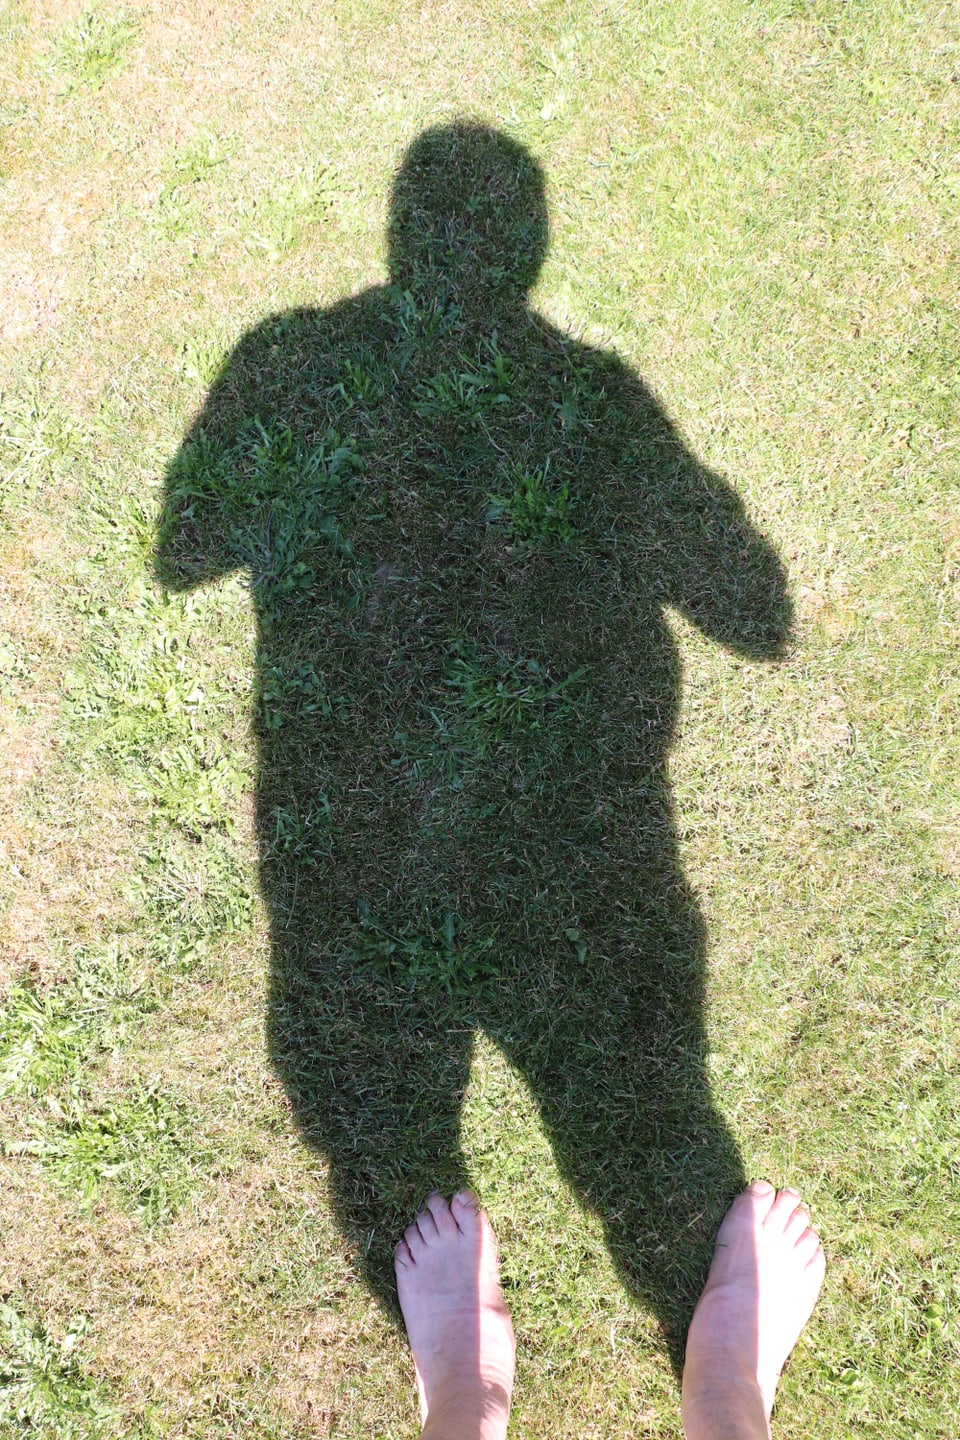 Bild mit echten Füssen und ganzem Schatten eines Fotographen.